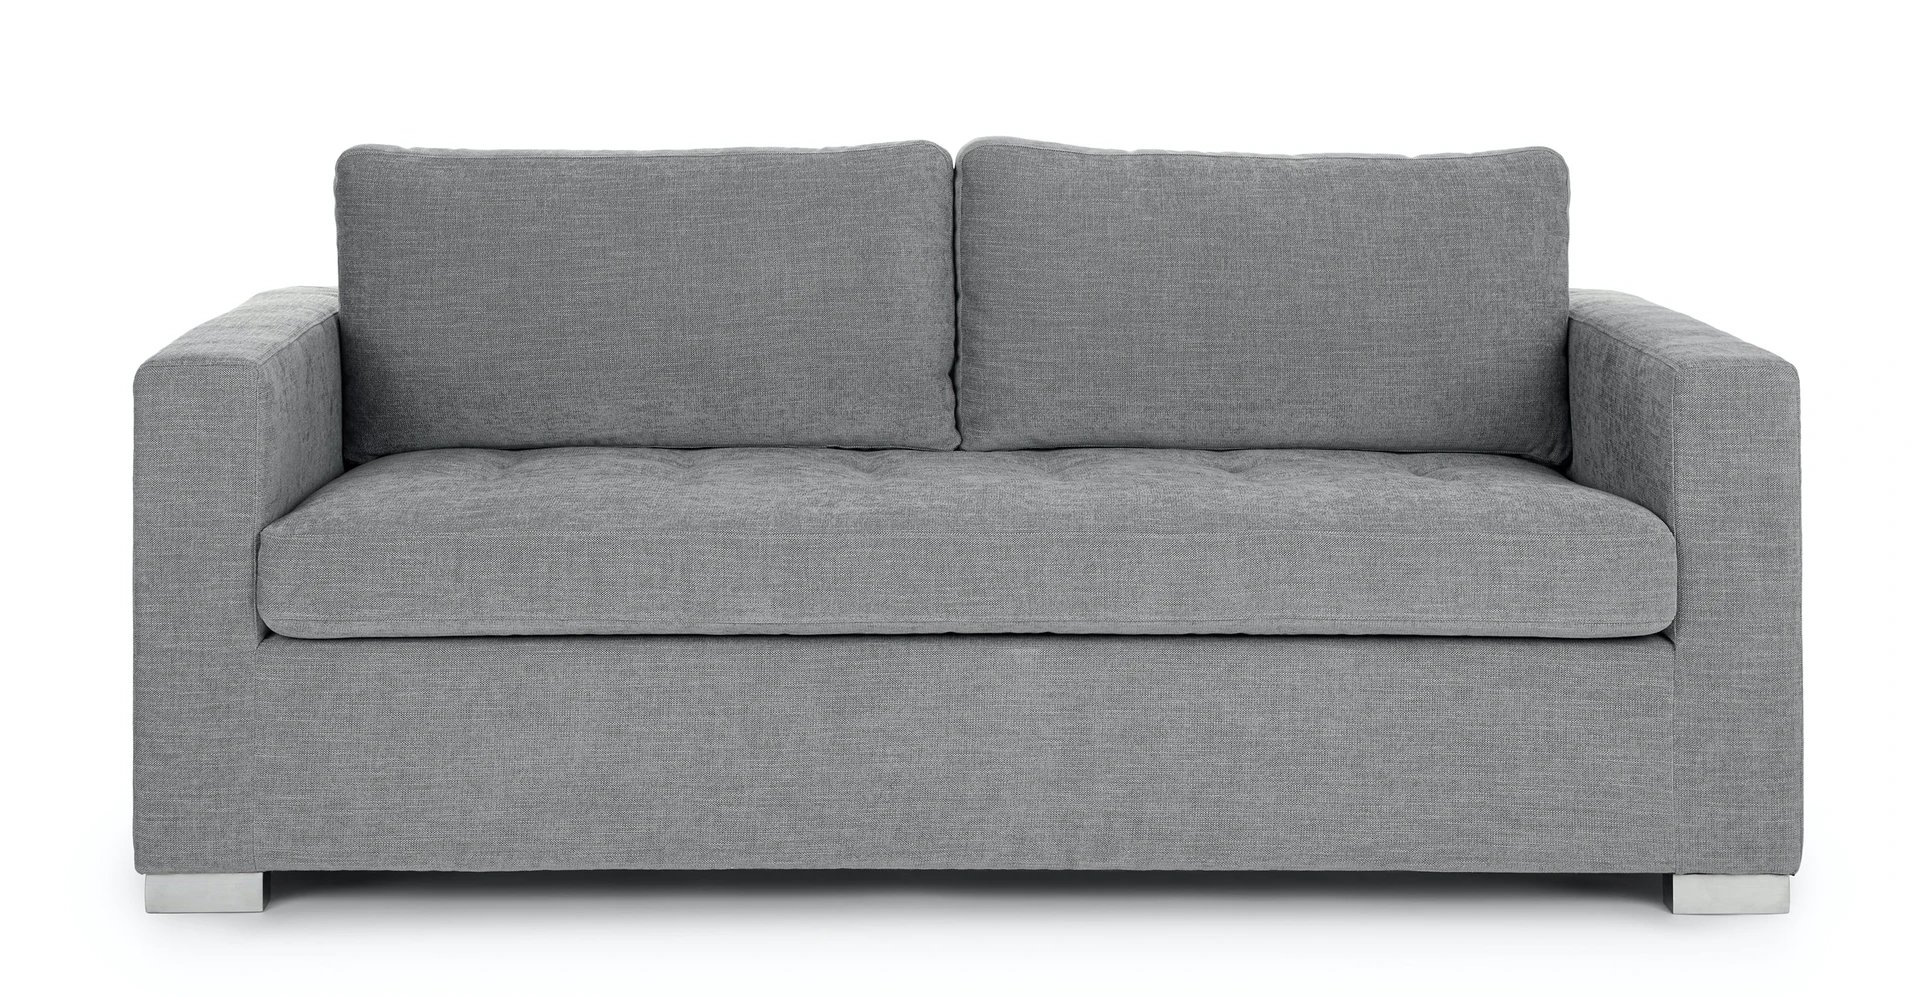 soma dawn grey sofa bed